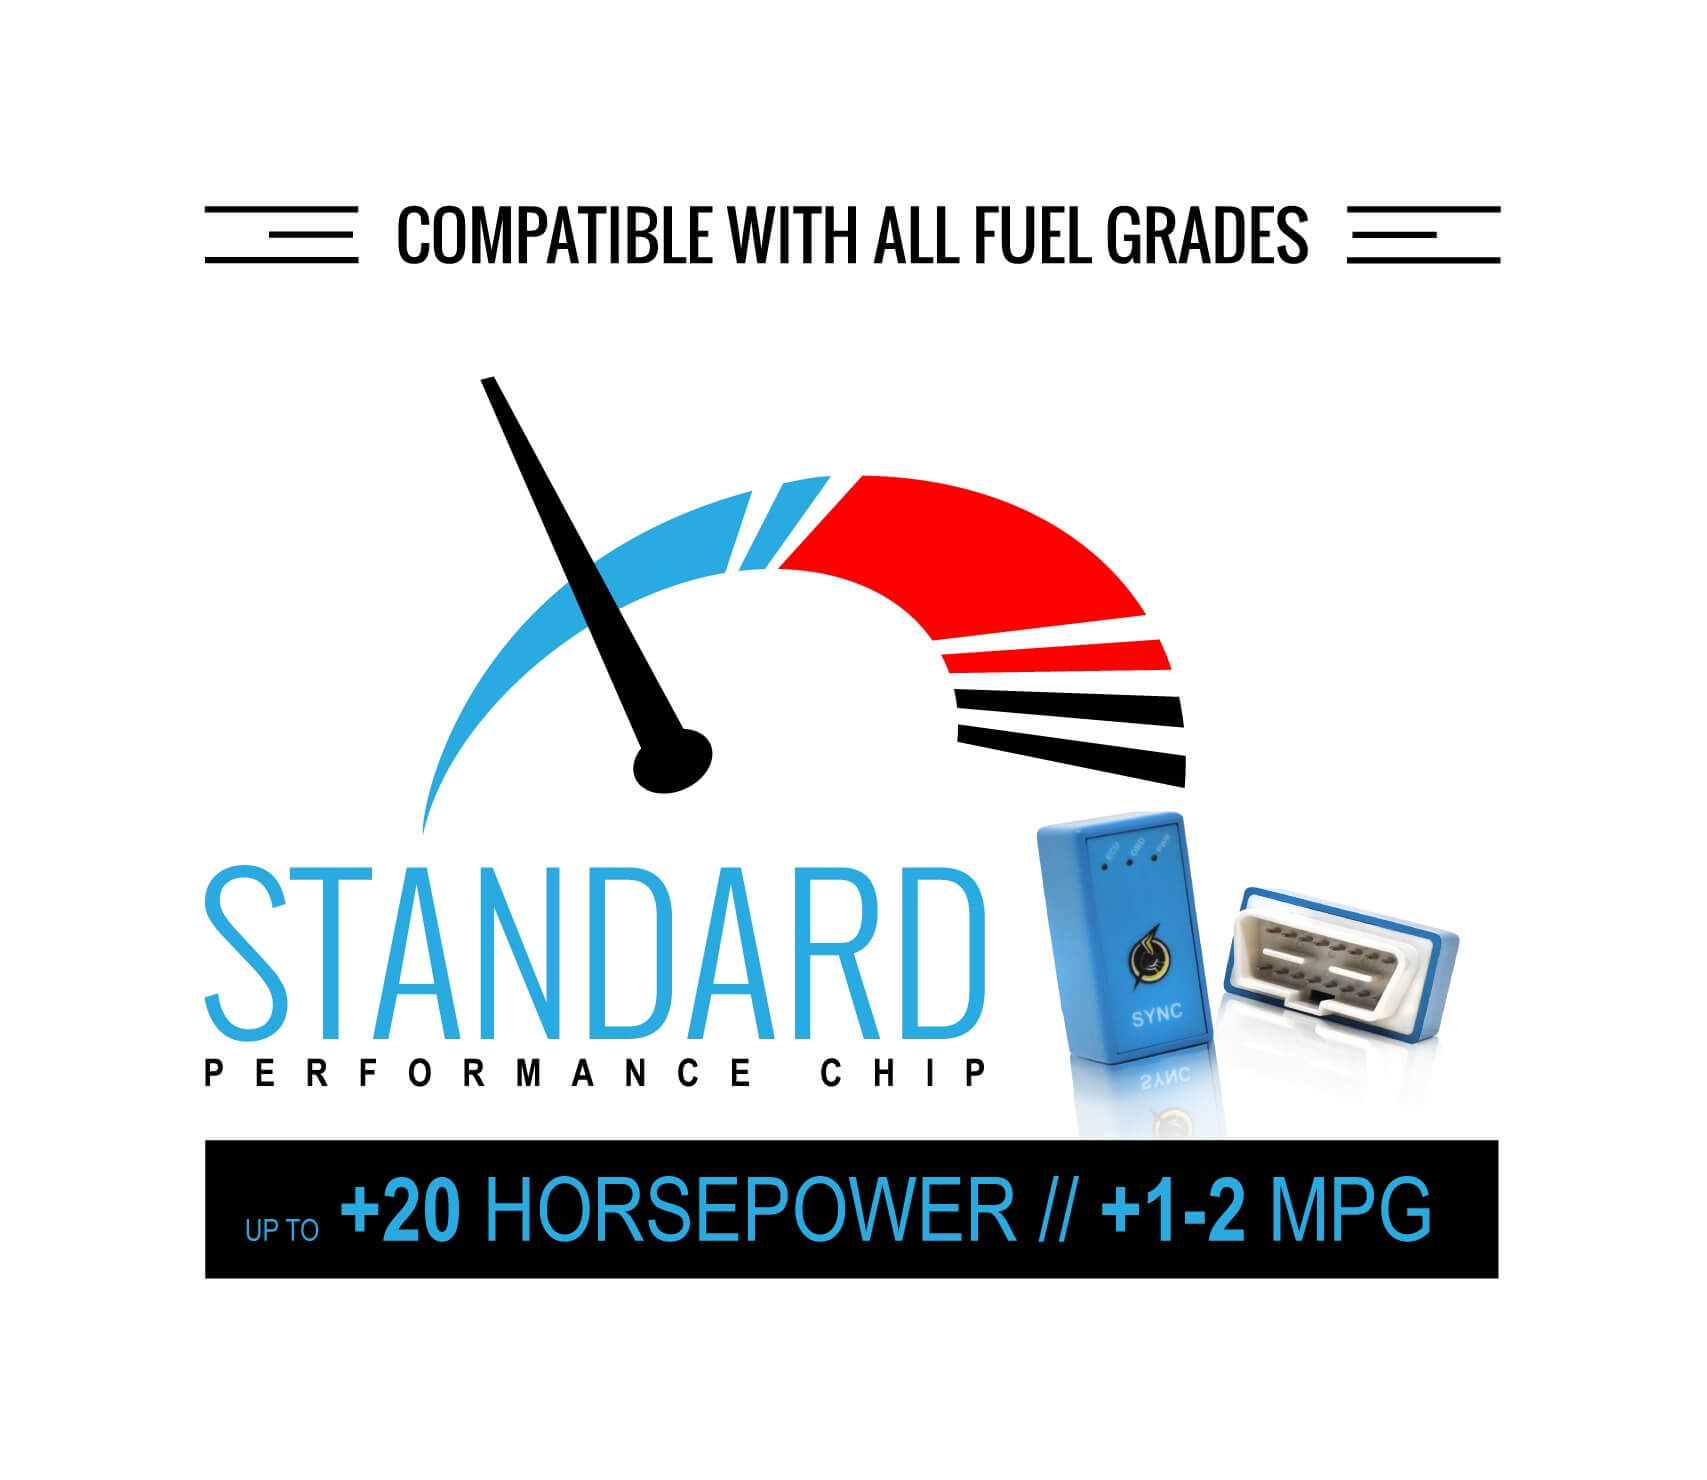 FOR HYNUDAI Models 1996-2017 ECU Tune OBD2 Performance Chip--Save Fuel/Gas